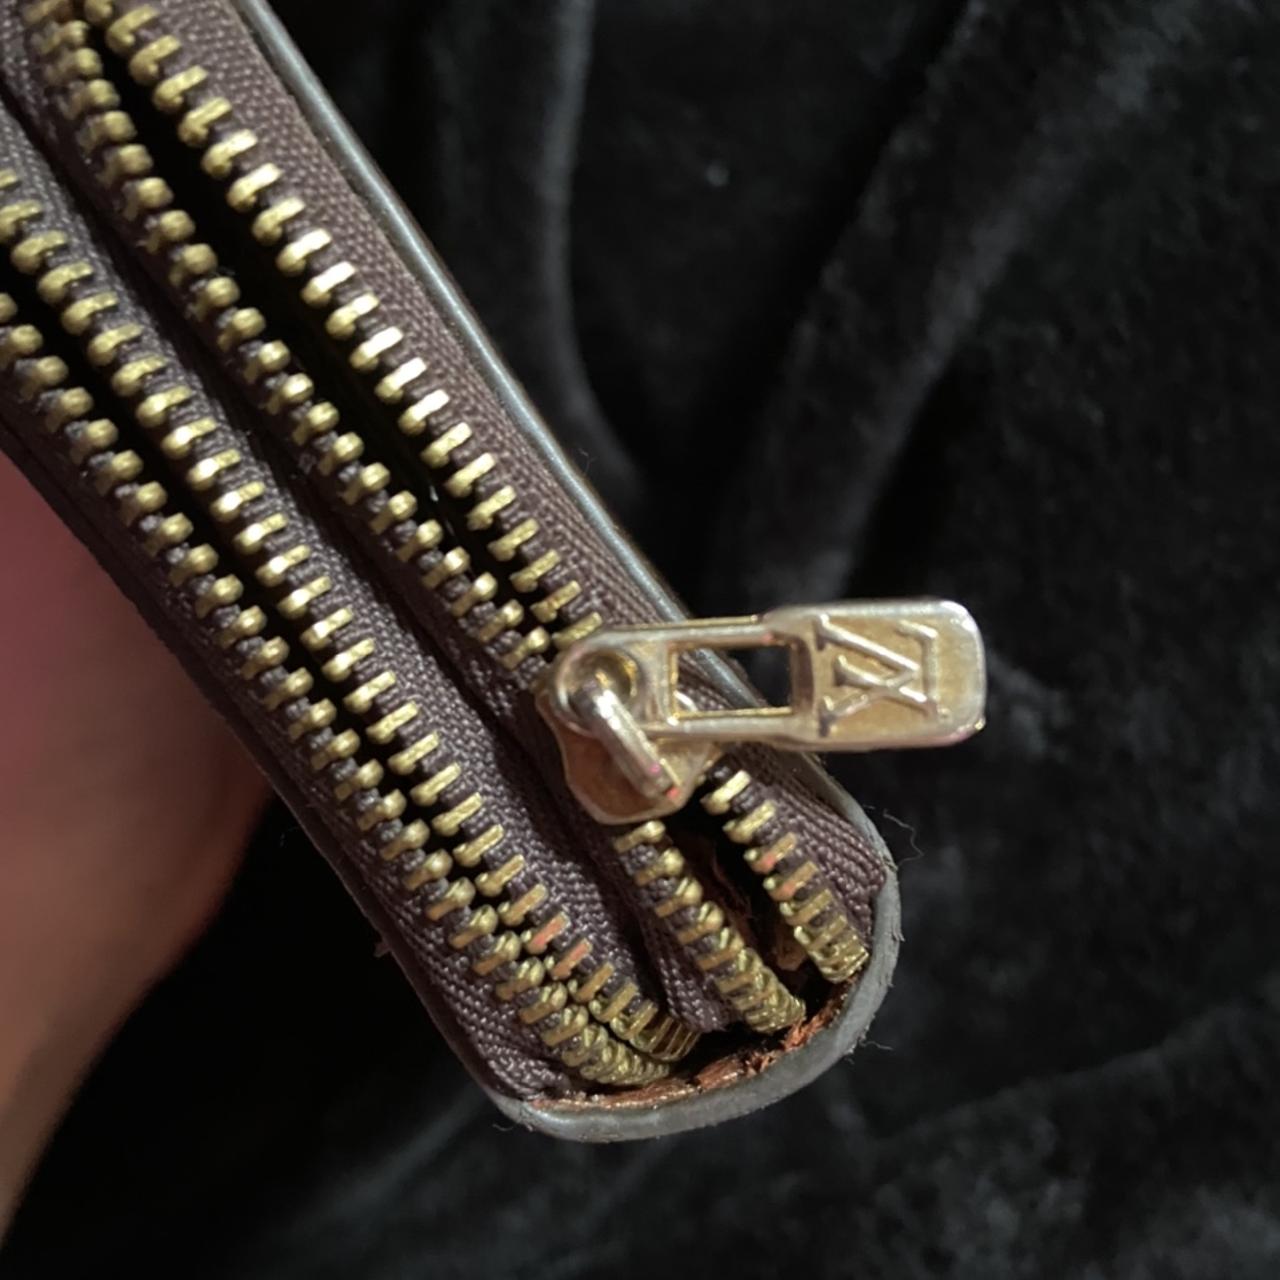 Supreme Louis Vuitton Wallet. 💯 authentic. H/o: 900 - Depop